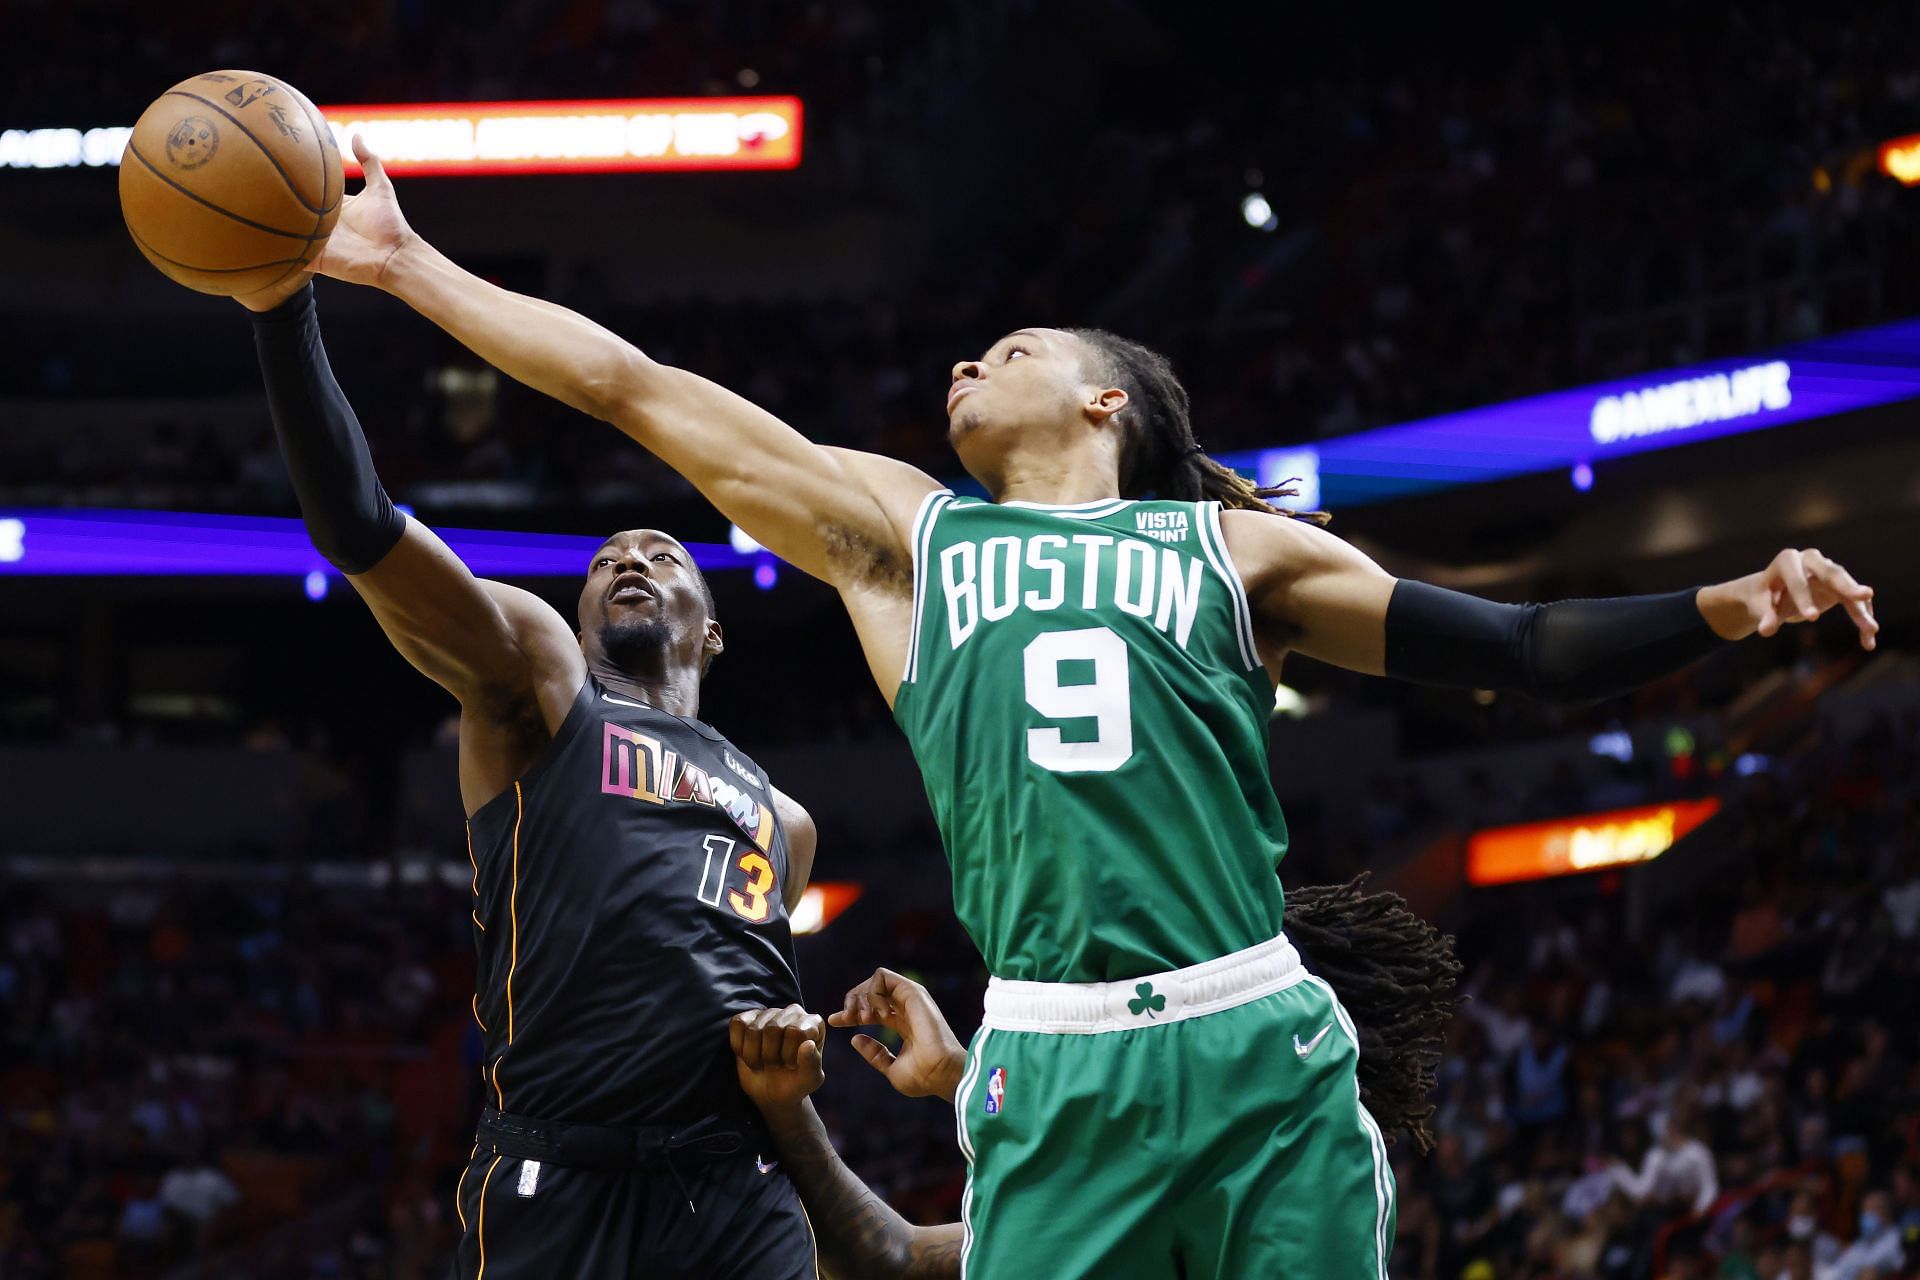 The Boston Celtics will host the Miami Heat on March 30th